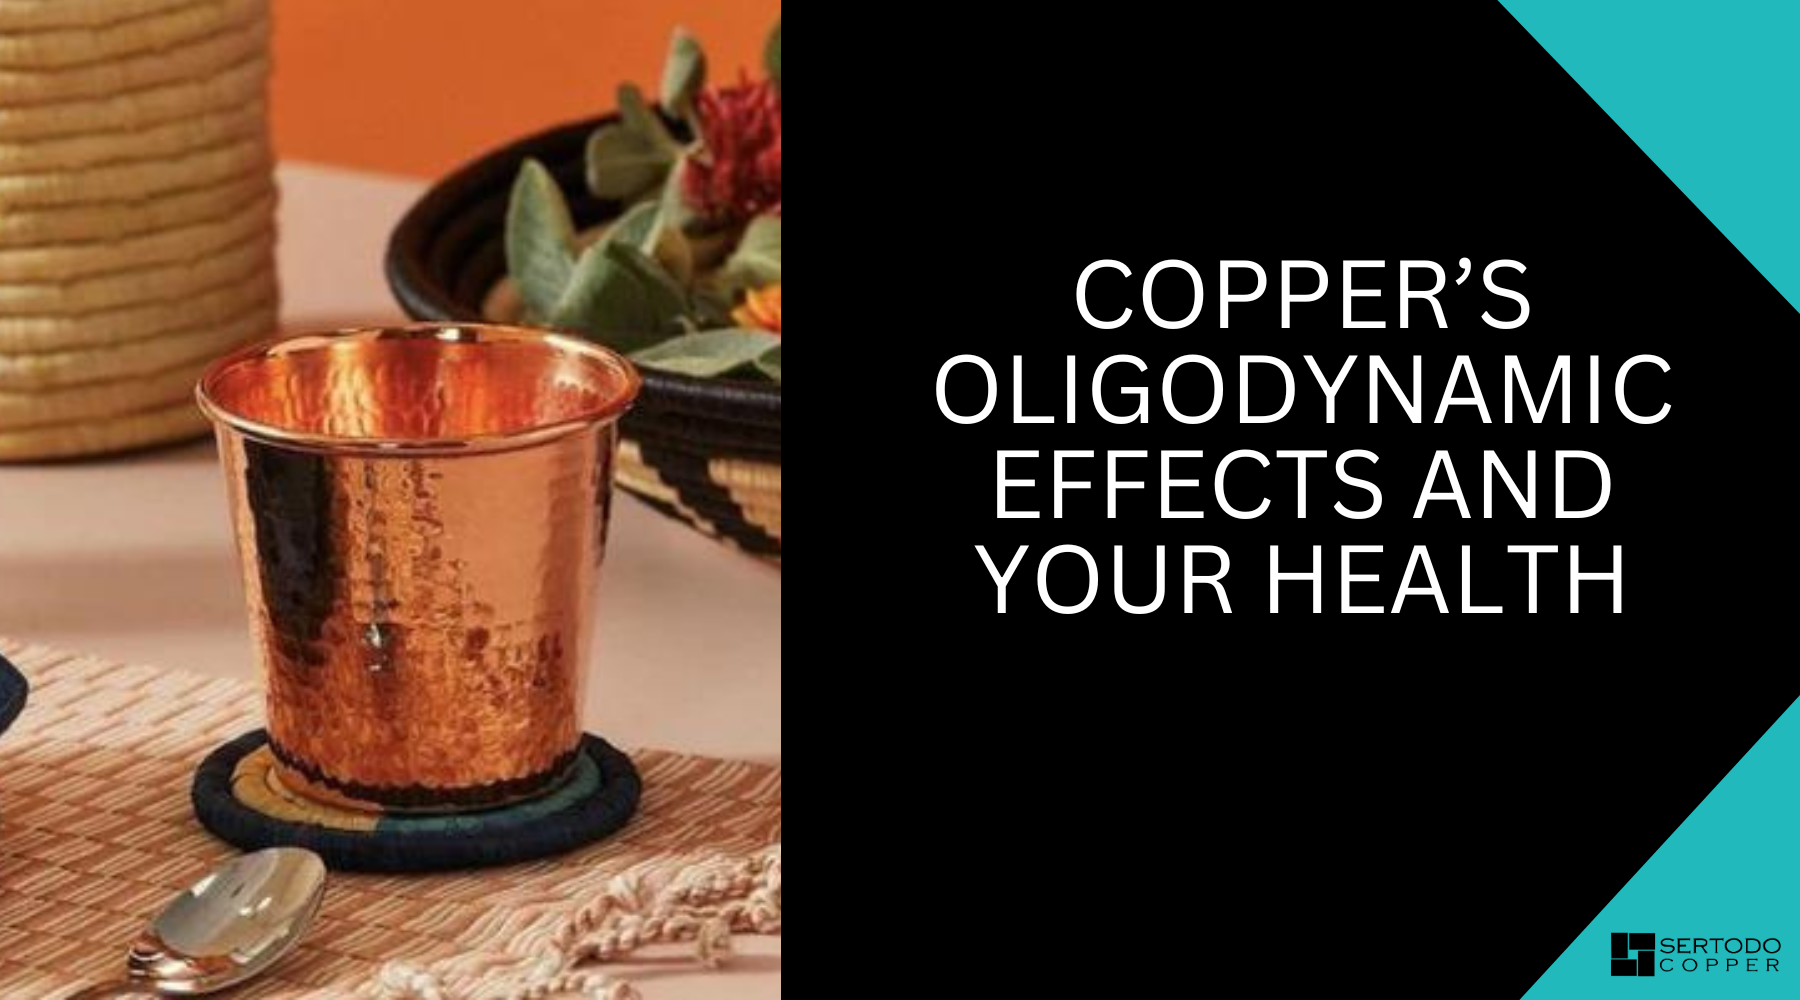 Copper oligodynamic effects and health